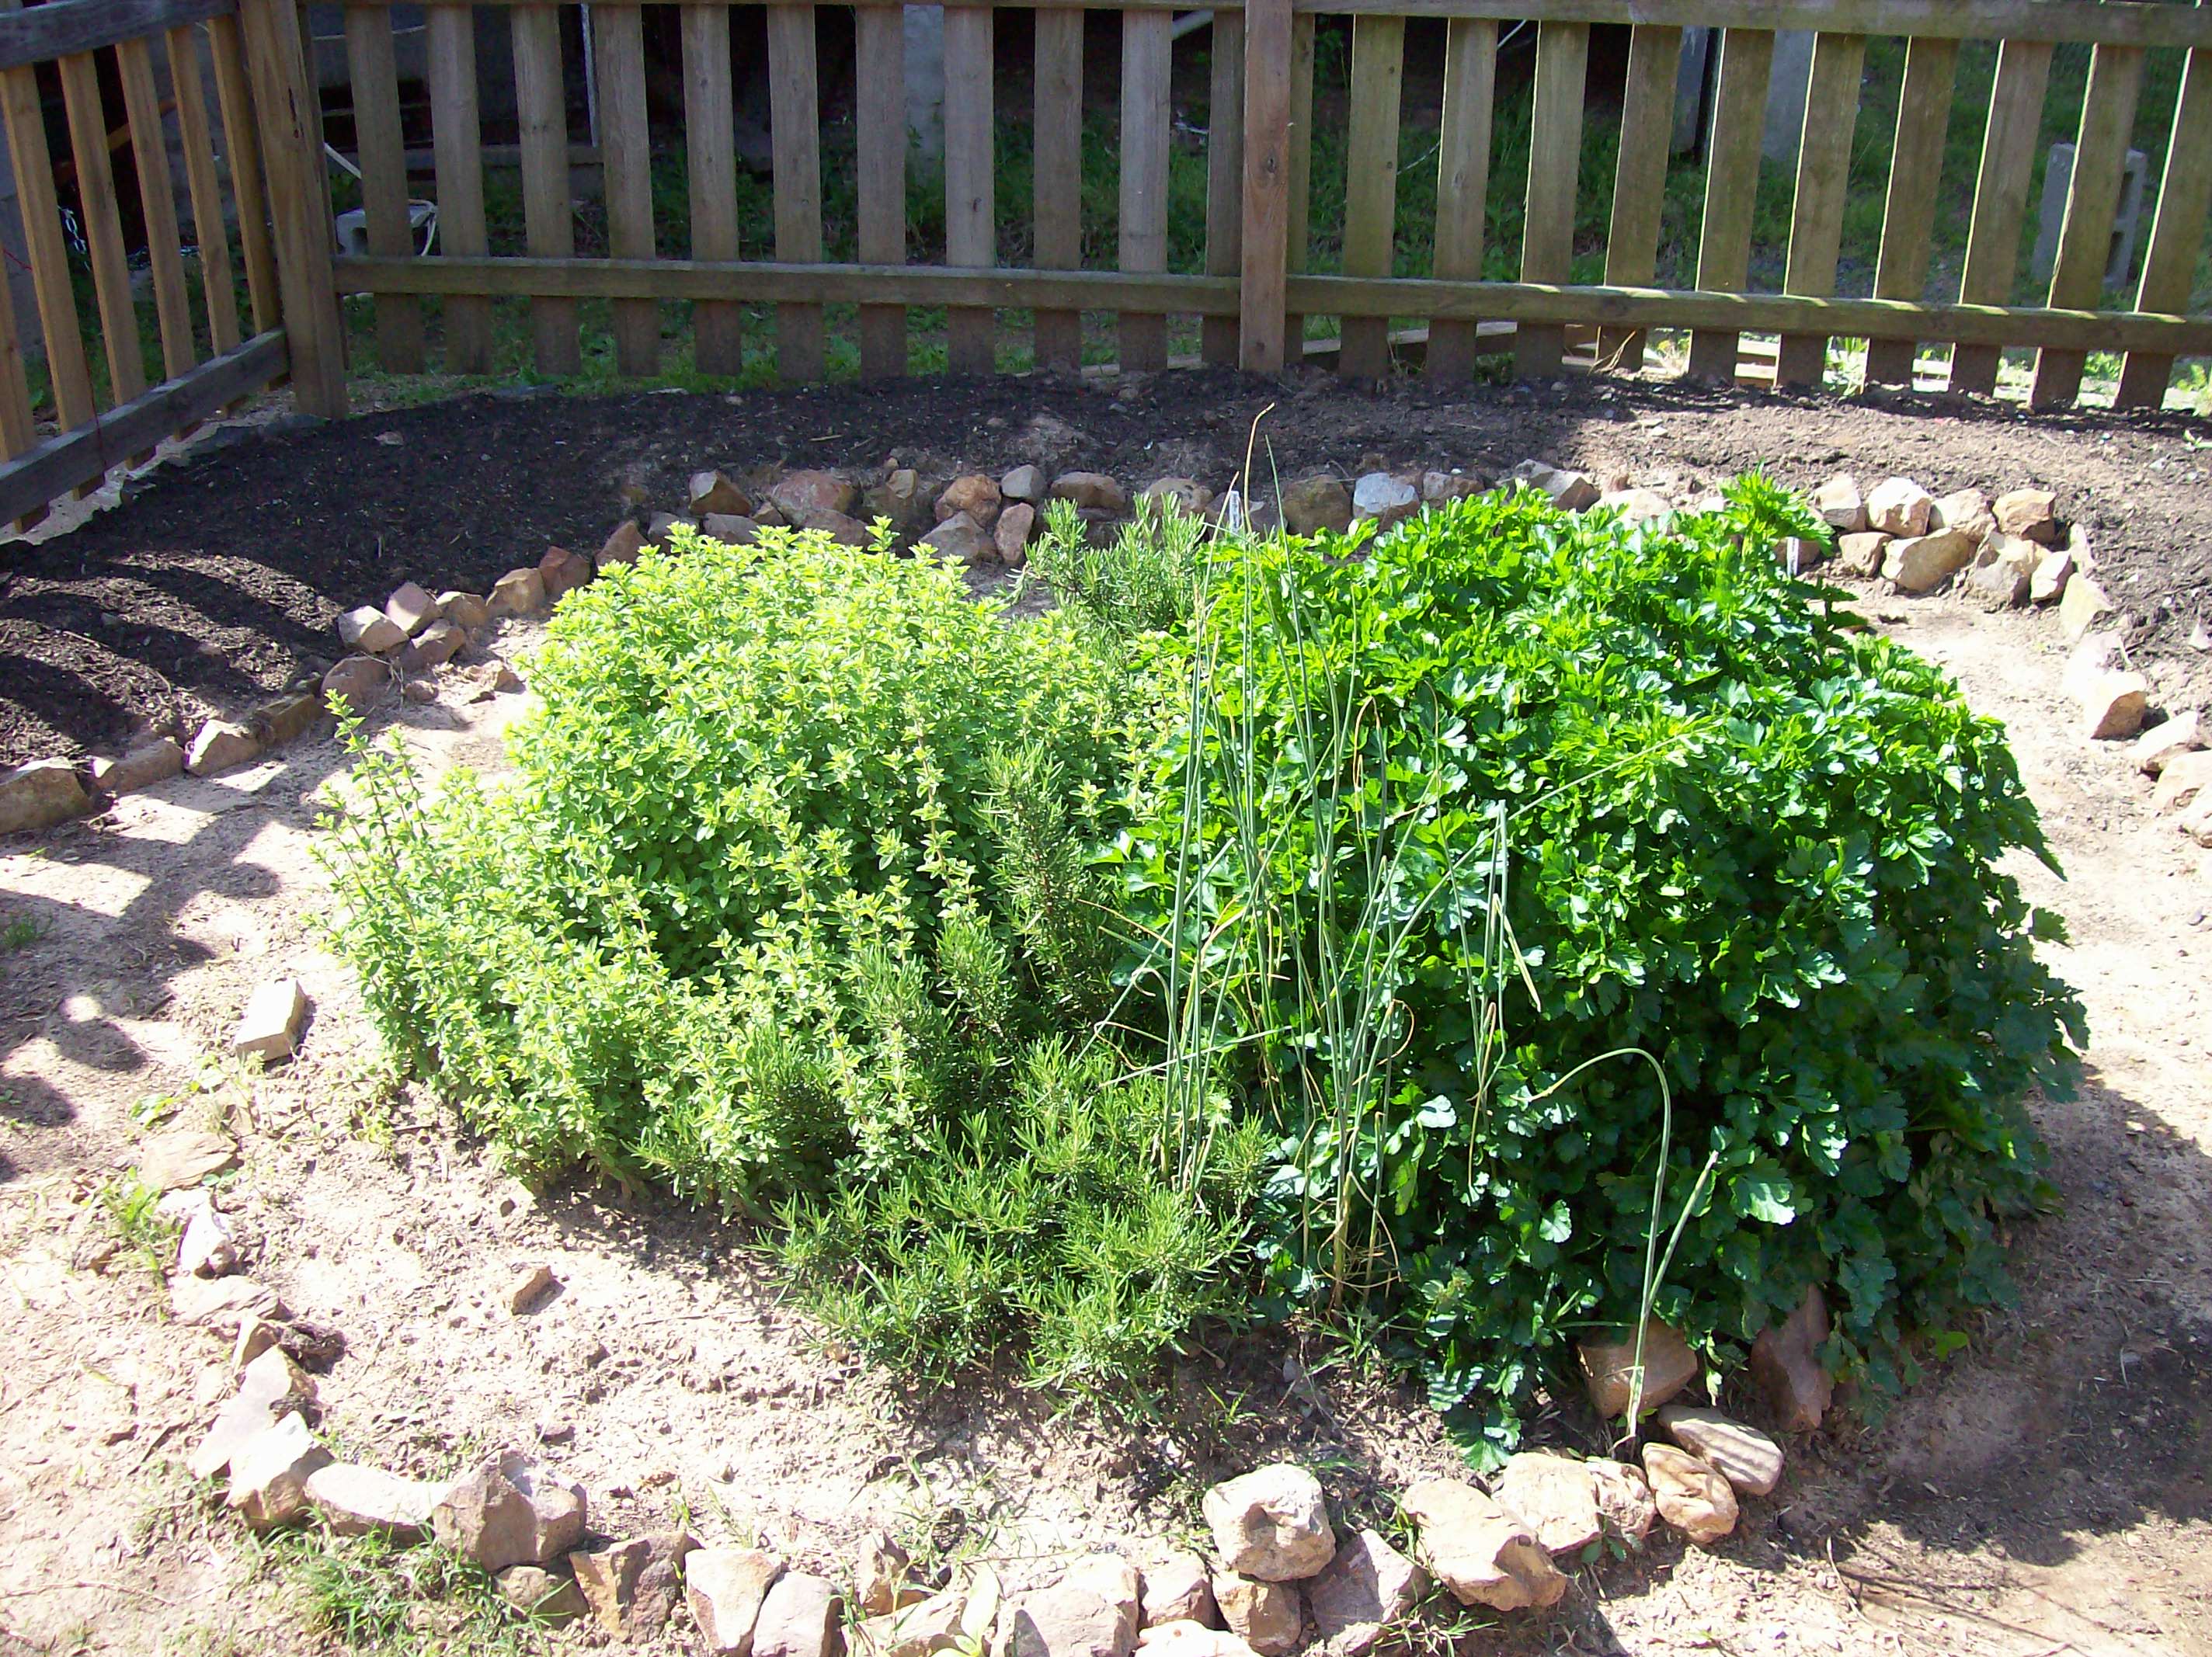 Herb Garden